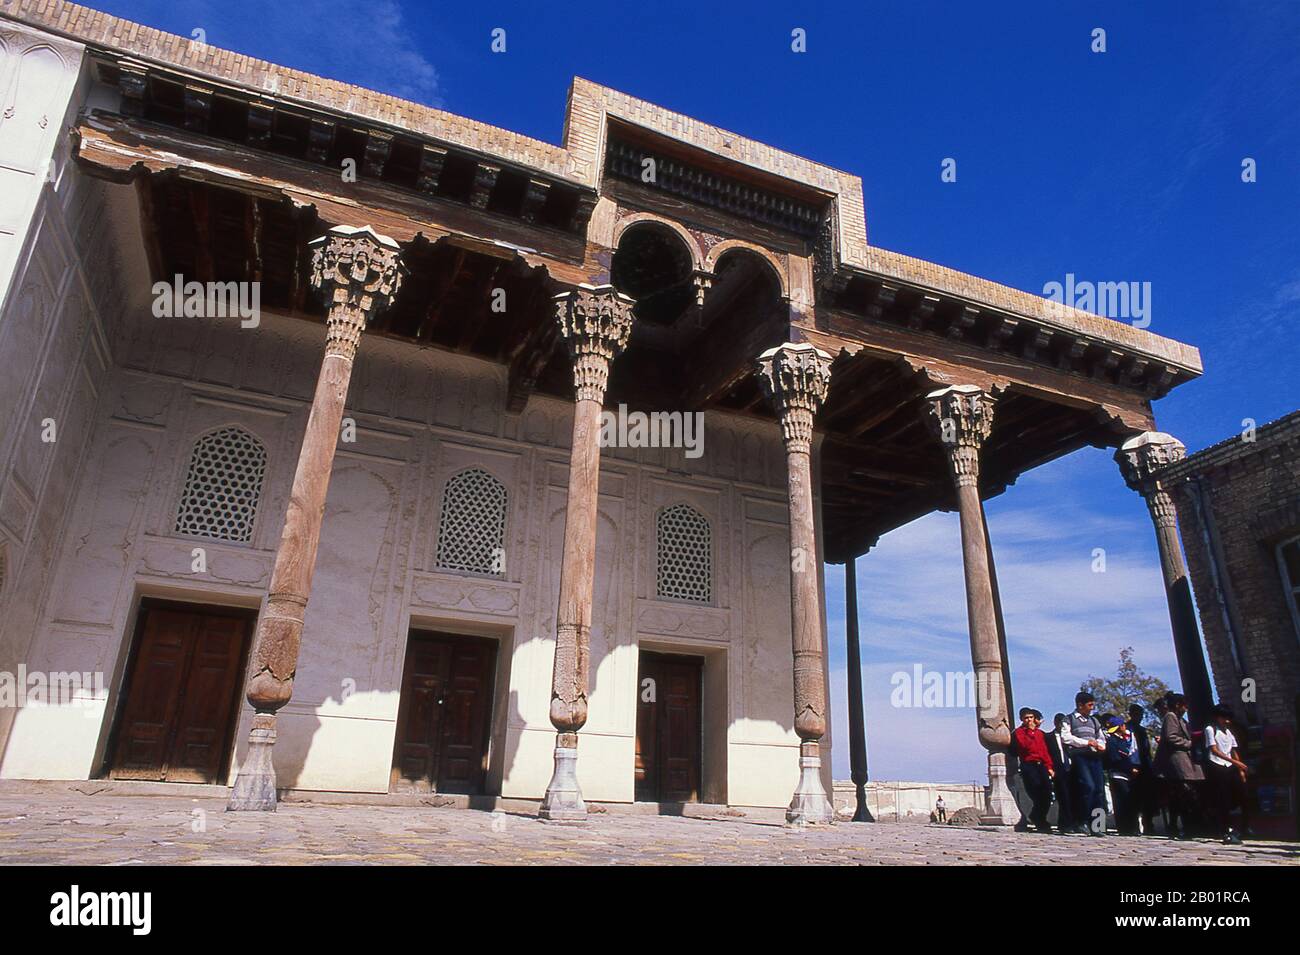 Uzbekistan: Soffitto e colonne in legno presso la Jama Masjid (Moschea del venerdì) all'interno della fortezza dell'Arca, Bukhara. L'Arca fu inizialmente costruita e occupata intorno al V secolo. Oltre ad essere una struttura militare, l'Arca comprendeva quella che era essenzialmente una città che, durante gran parte della storia della fortezza, era abitata dalle varie corti reali che dominavano la regione circostante Bukhara. L'Arca fu usata come fortezza fino alla caduta in mano alla Russia nel 1920. Bukhara fu fondata nel 500 a.C. nell'area ora chiamata Arca. Tuttavia, l'oasi di Bukhara era stata abitata molto tempo prima. Foto Stock